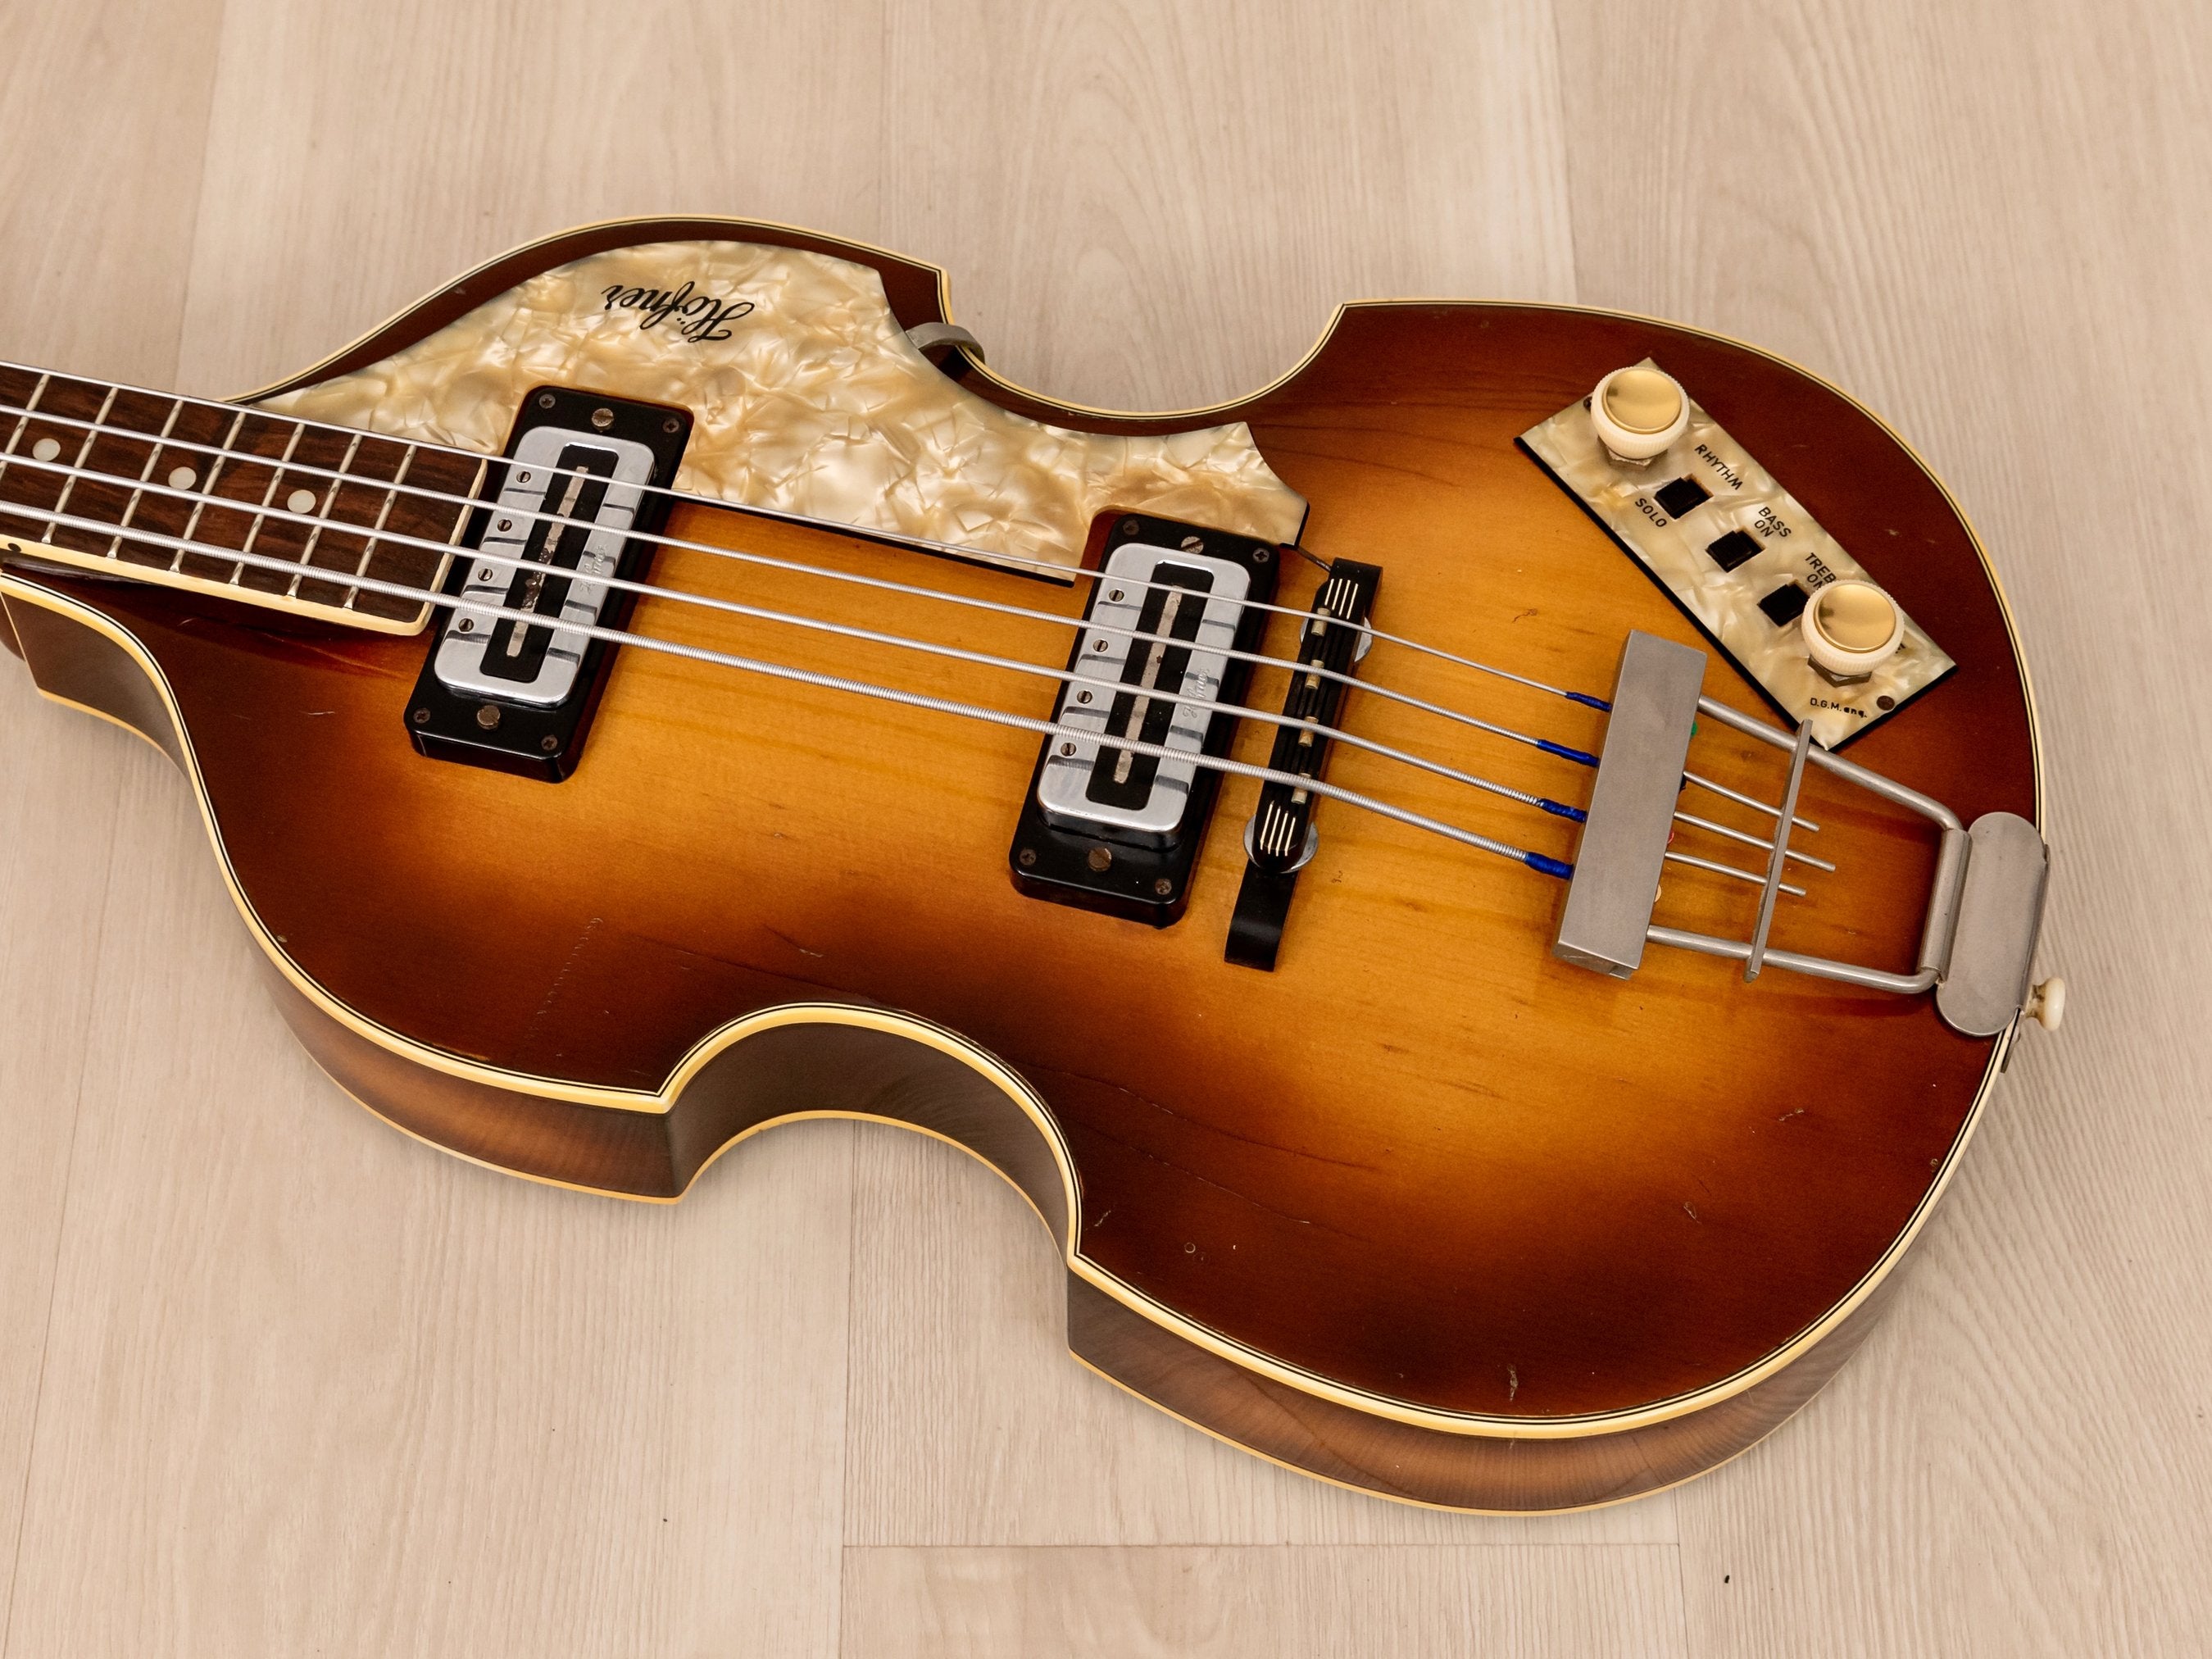 1973 Hofner 500/1 Beatle Bass Vintage Violin Bass 100% Original w/ Blade Pickups, Case